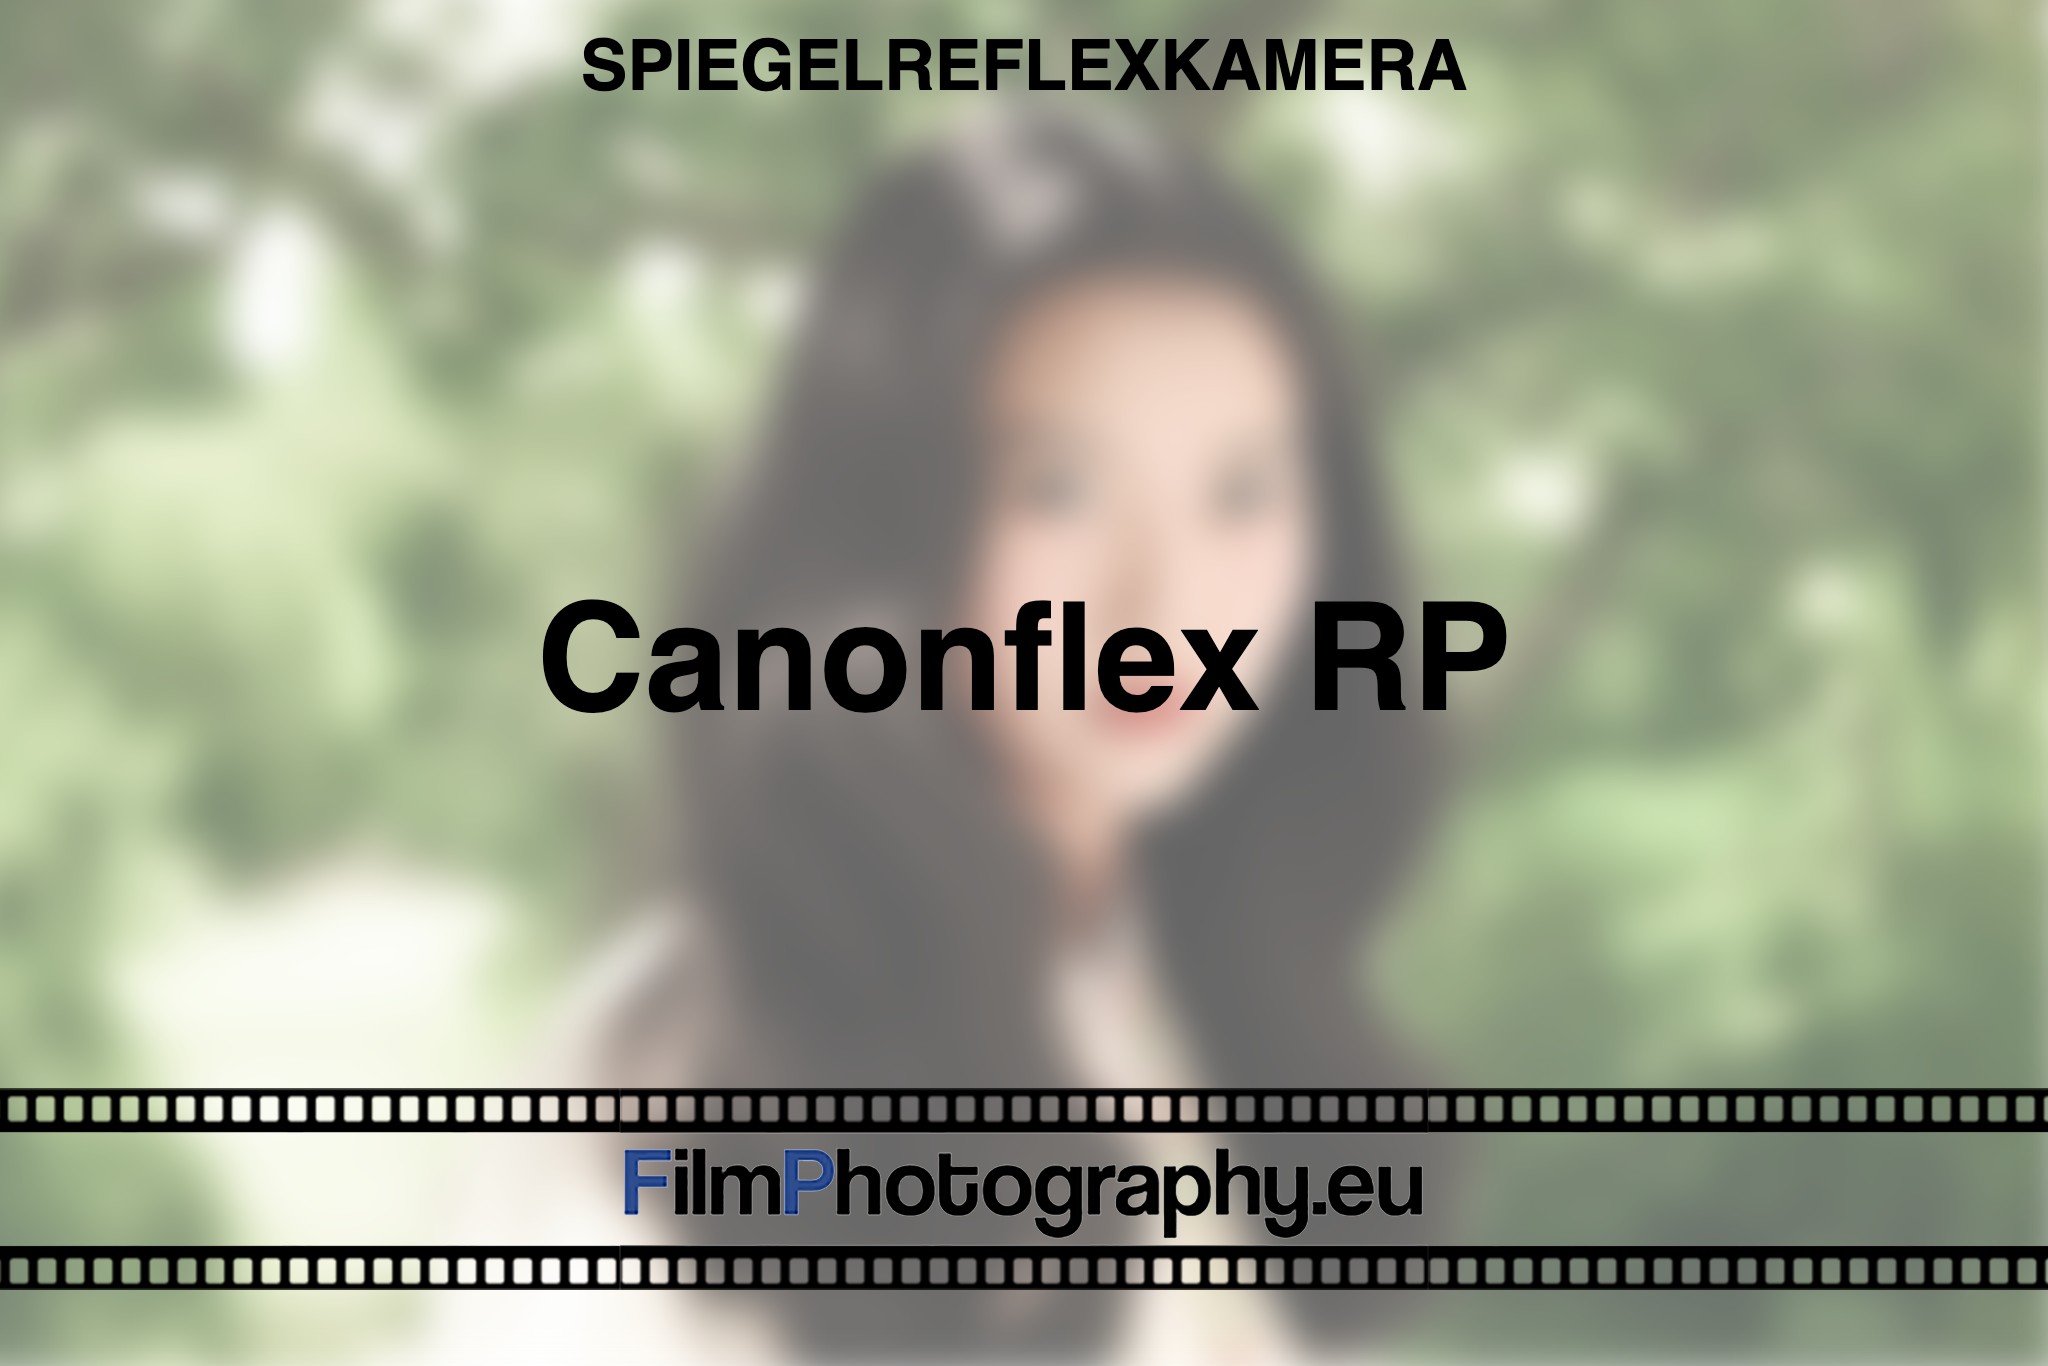 canonflex-rp-spiegelreflexkamera-bnv